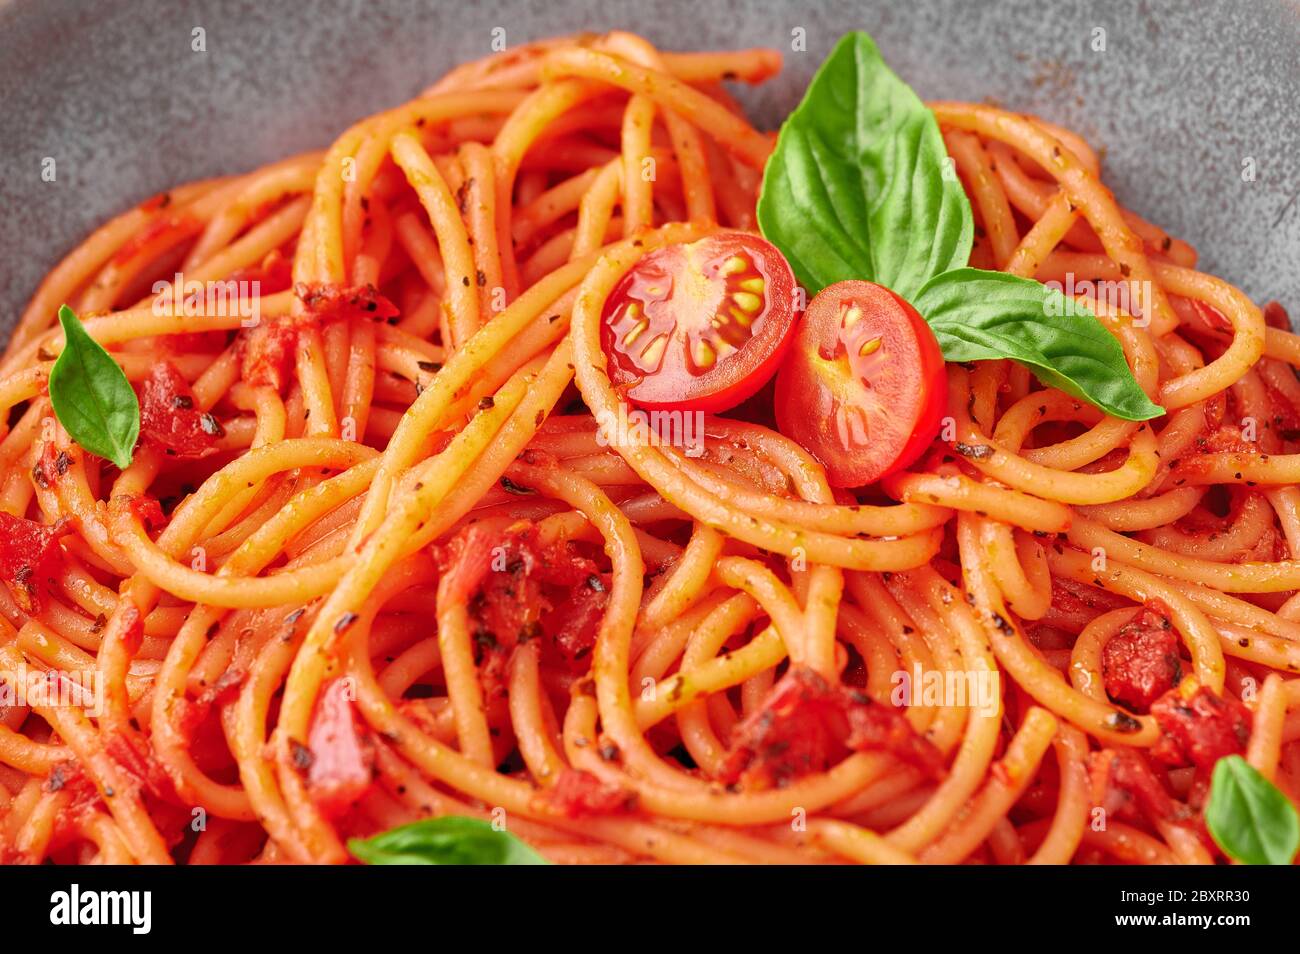 Spaghetti di pomodoro in recipiente grigio. La pasta con salsa di pomodoro è un piatto classico della cucina italiana. Popolare cucina italiana. Primo piano Foto Stock